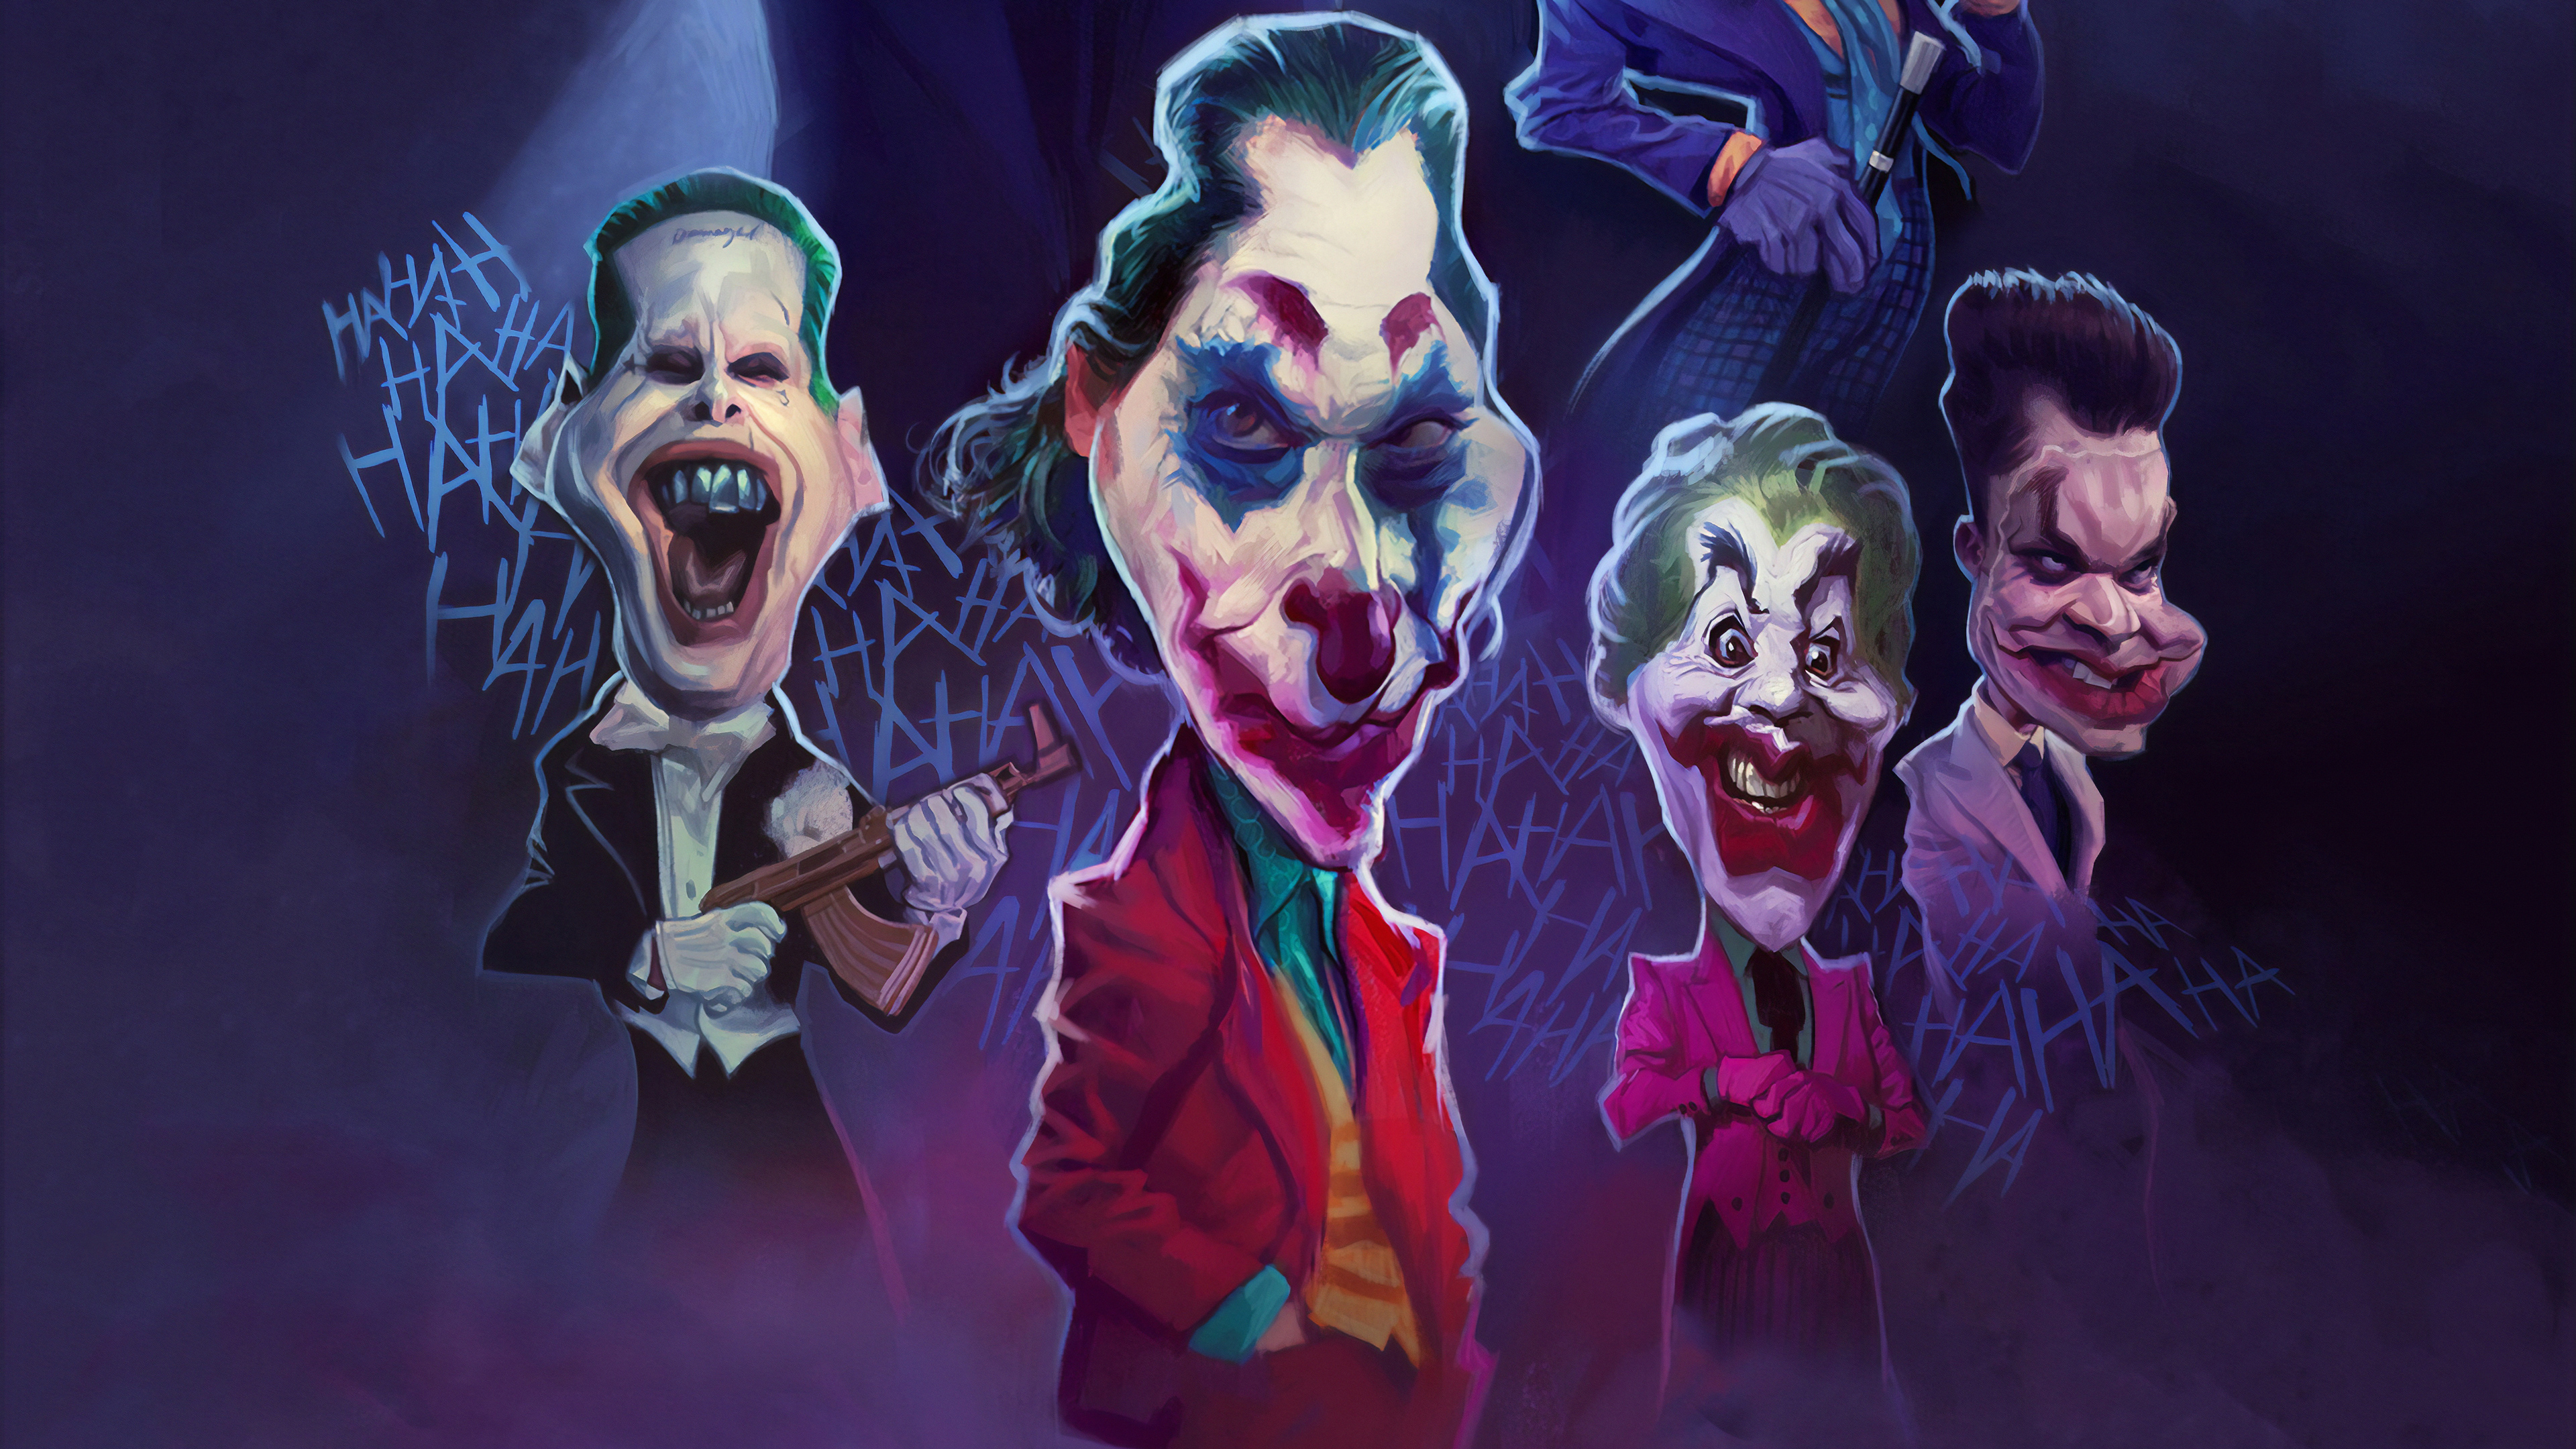 Joker Weird Face Art - Joker Weird Face - HD Wallpaper 